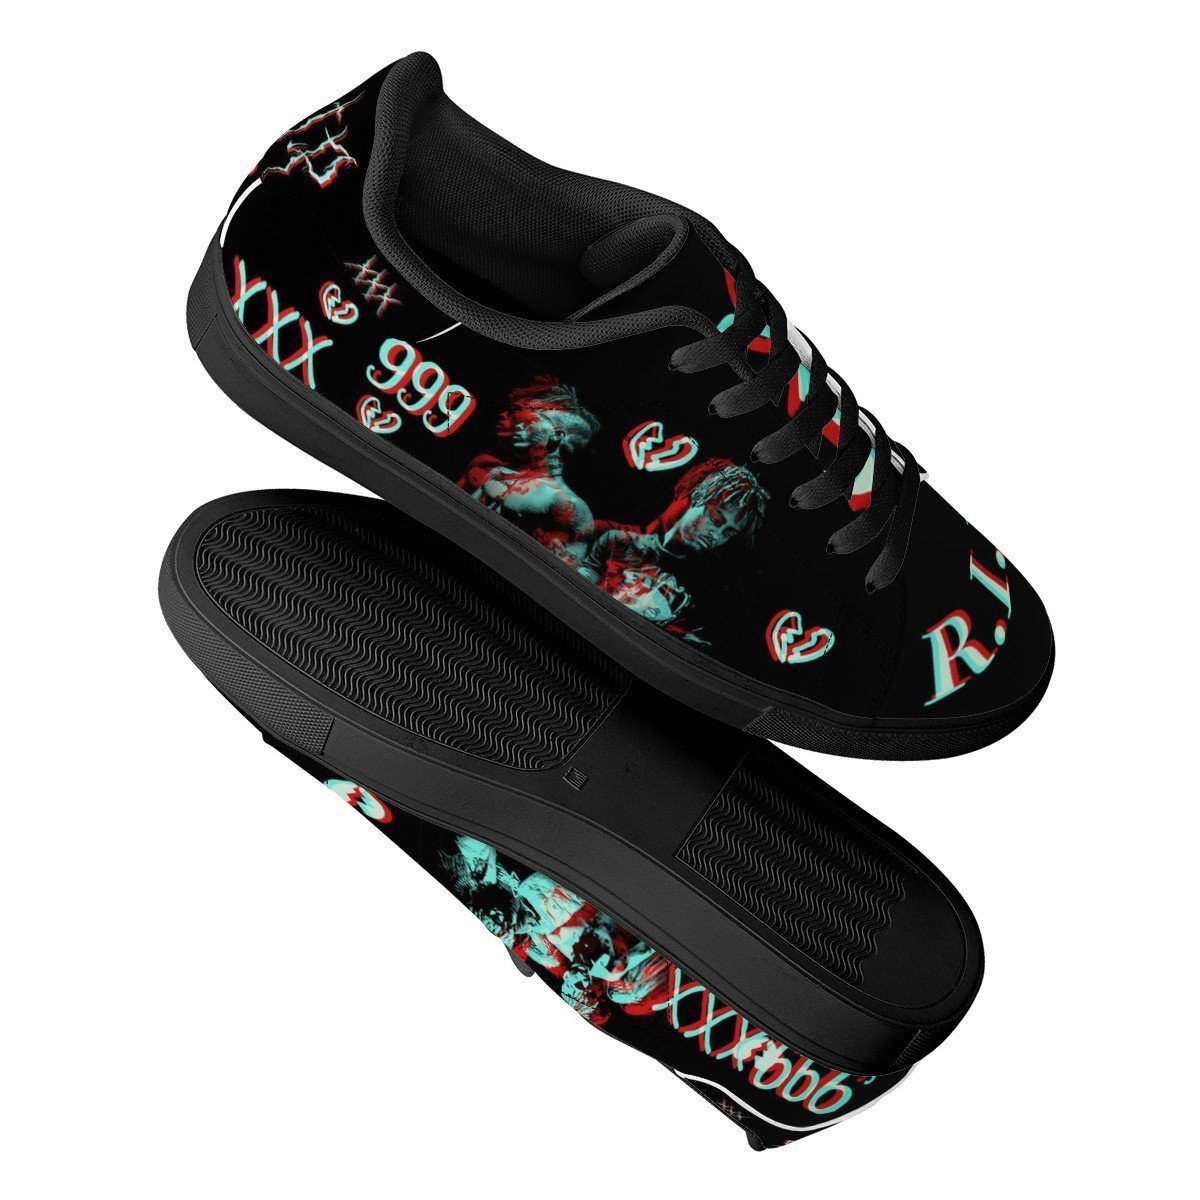 Juice Wrld And XXXTentacion Low top Leather Skate Shoes, Tennis Shoes ...